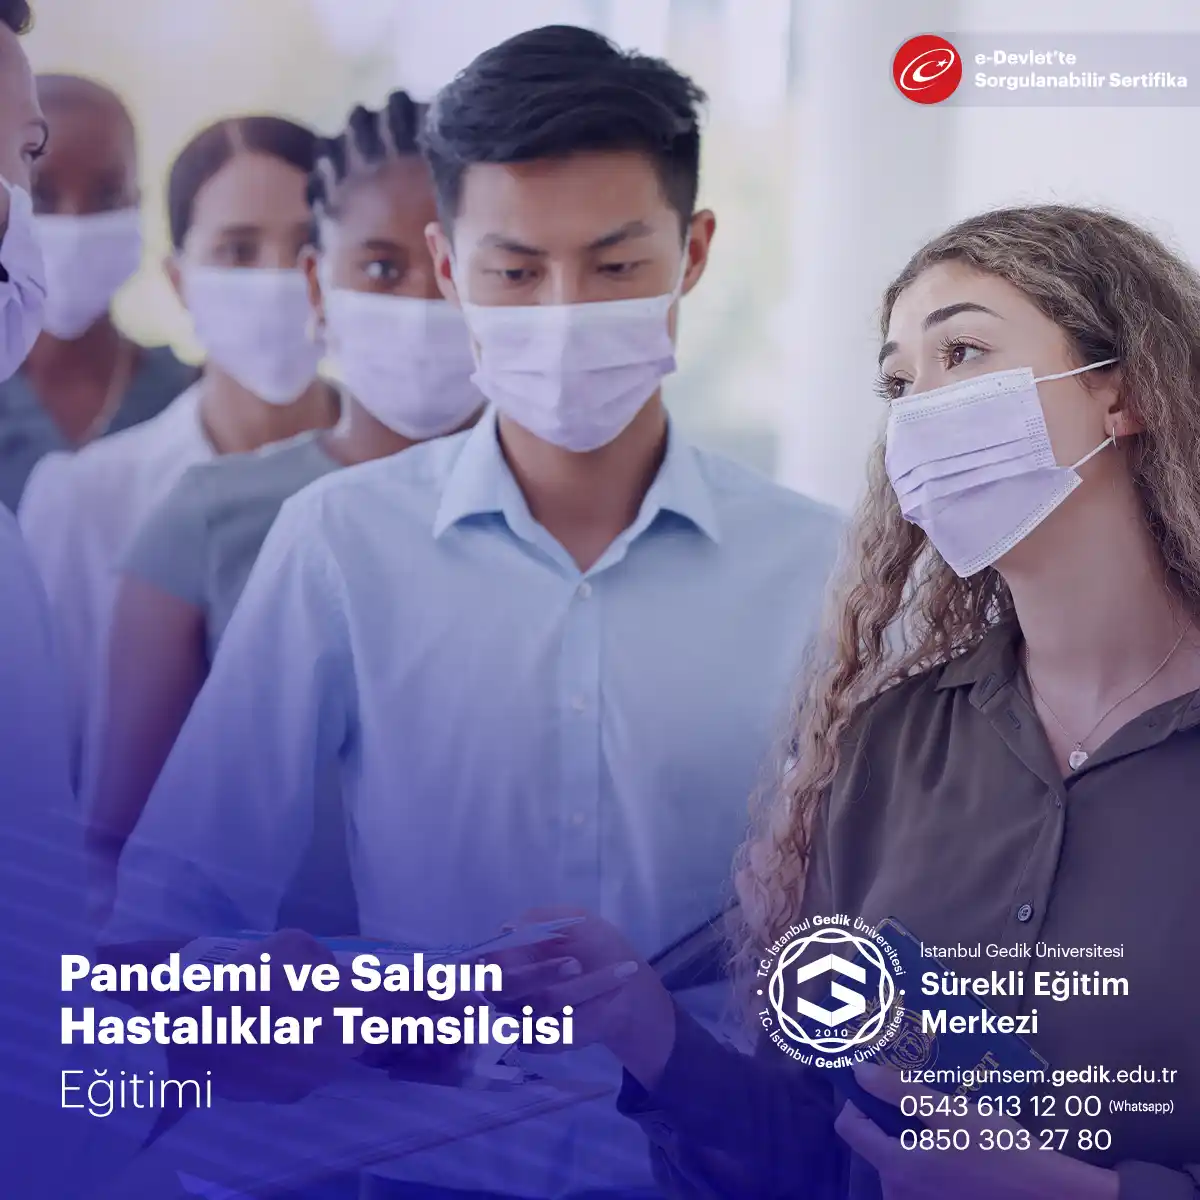 Pandemi ve Salgın Hastalıklar Temsilcisi Sertifika Programı